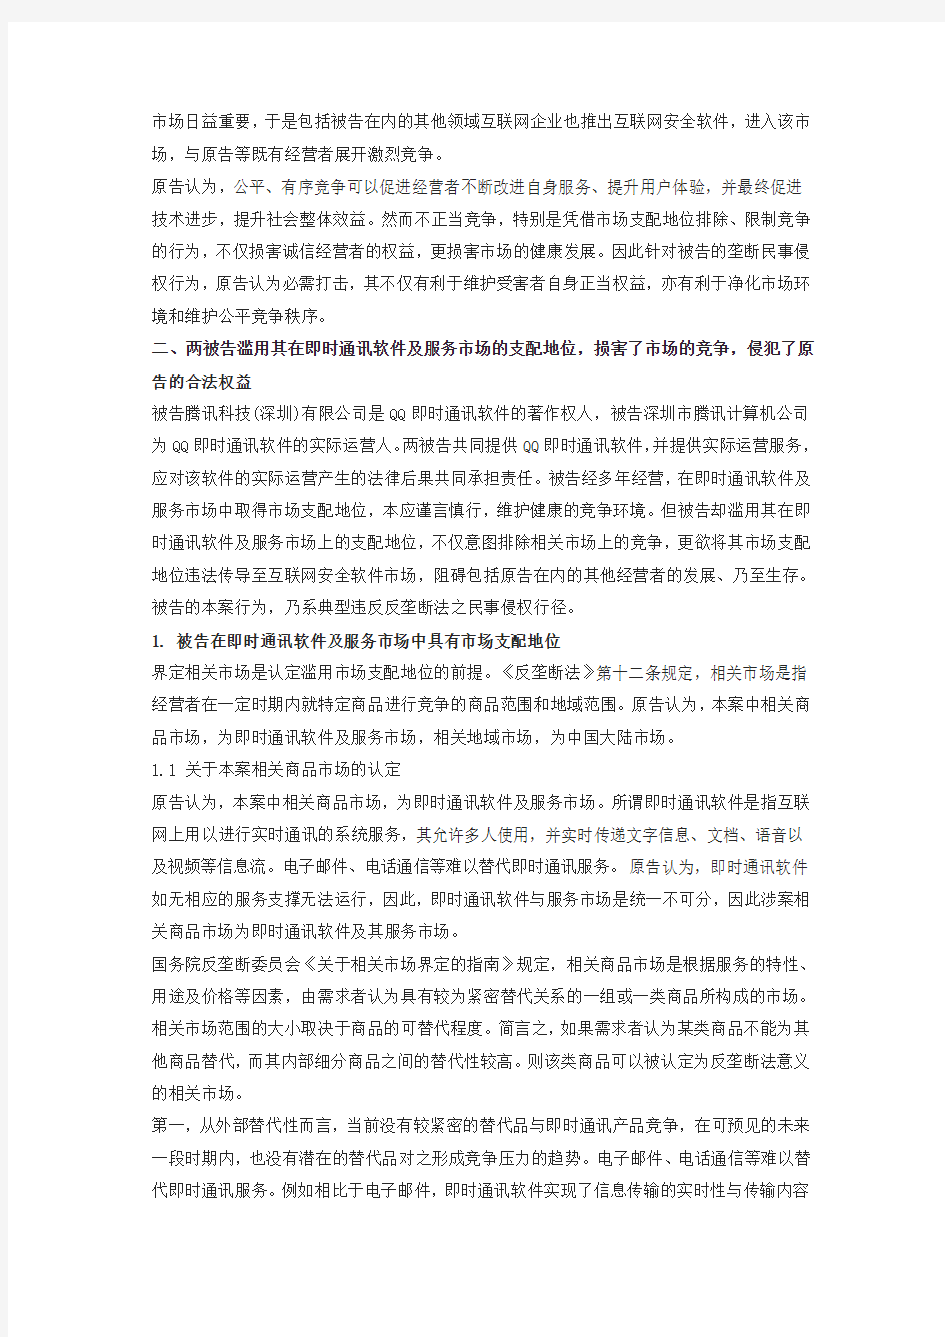 奇虎诉腾讯QQ民事起诉状